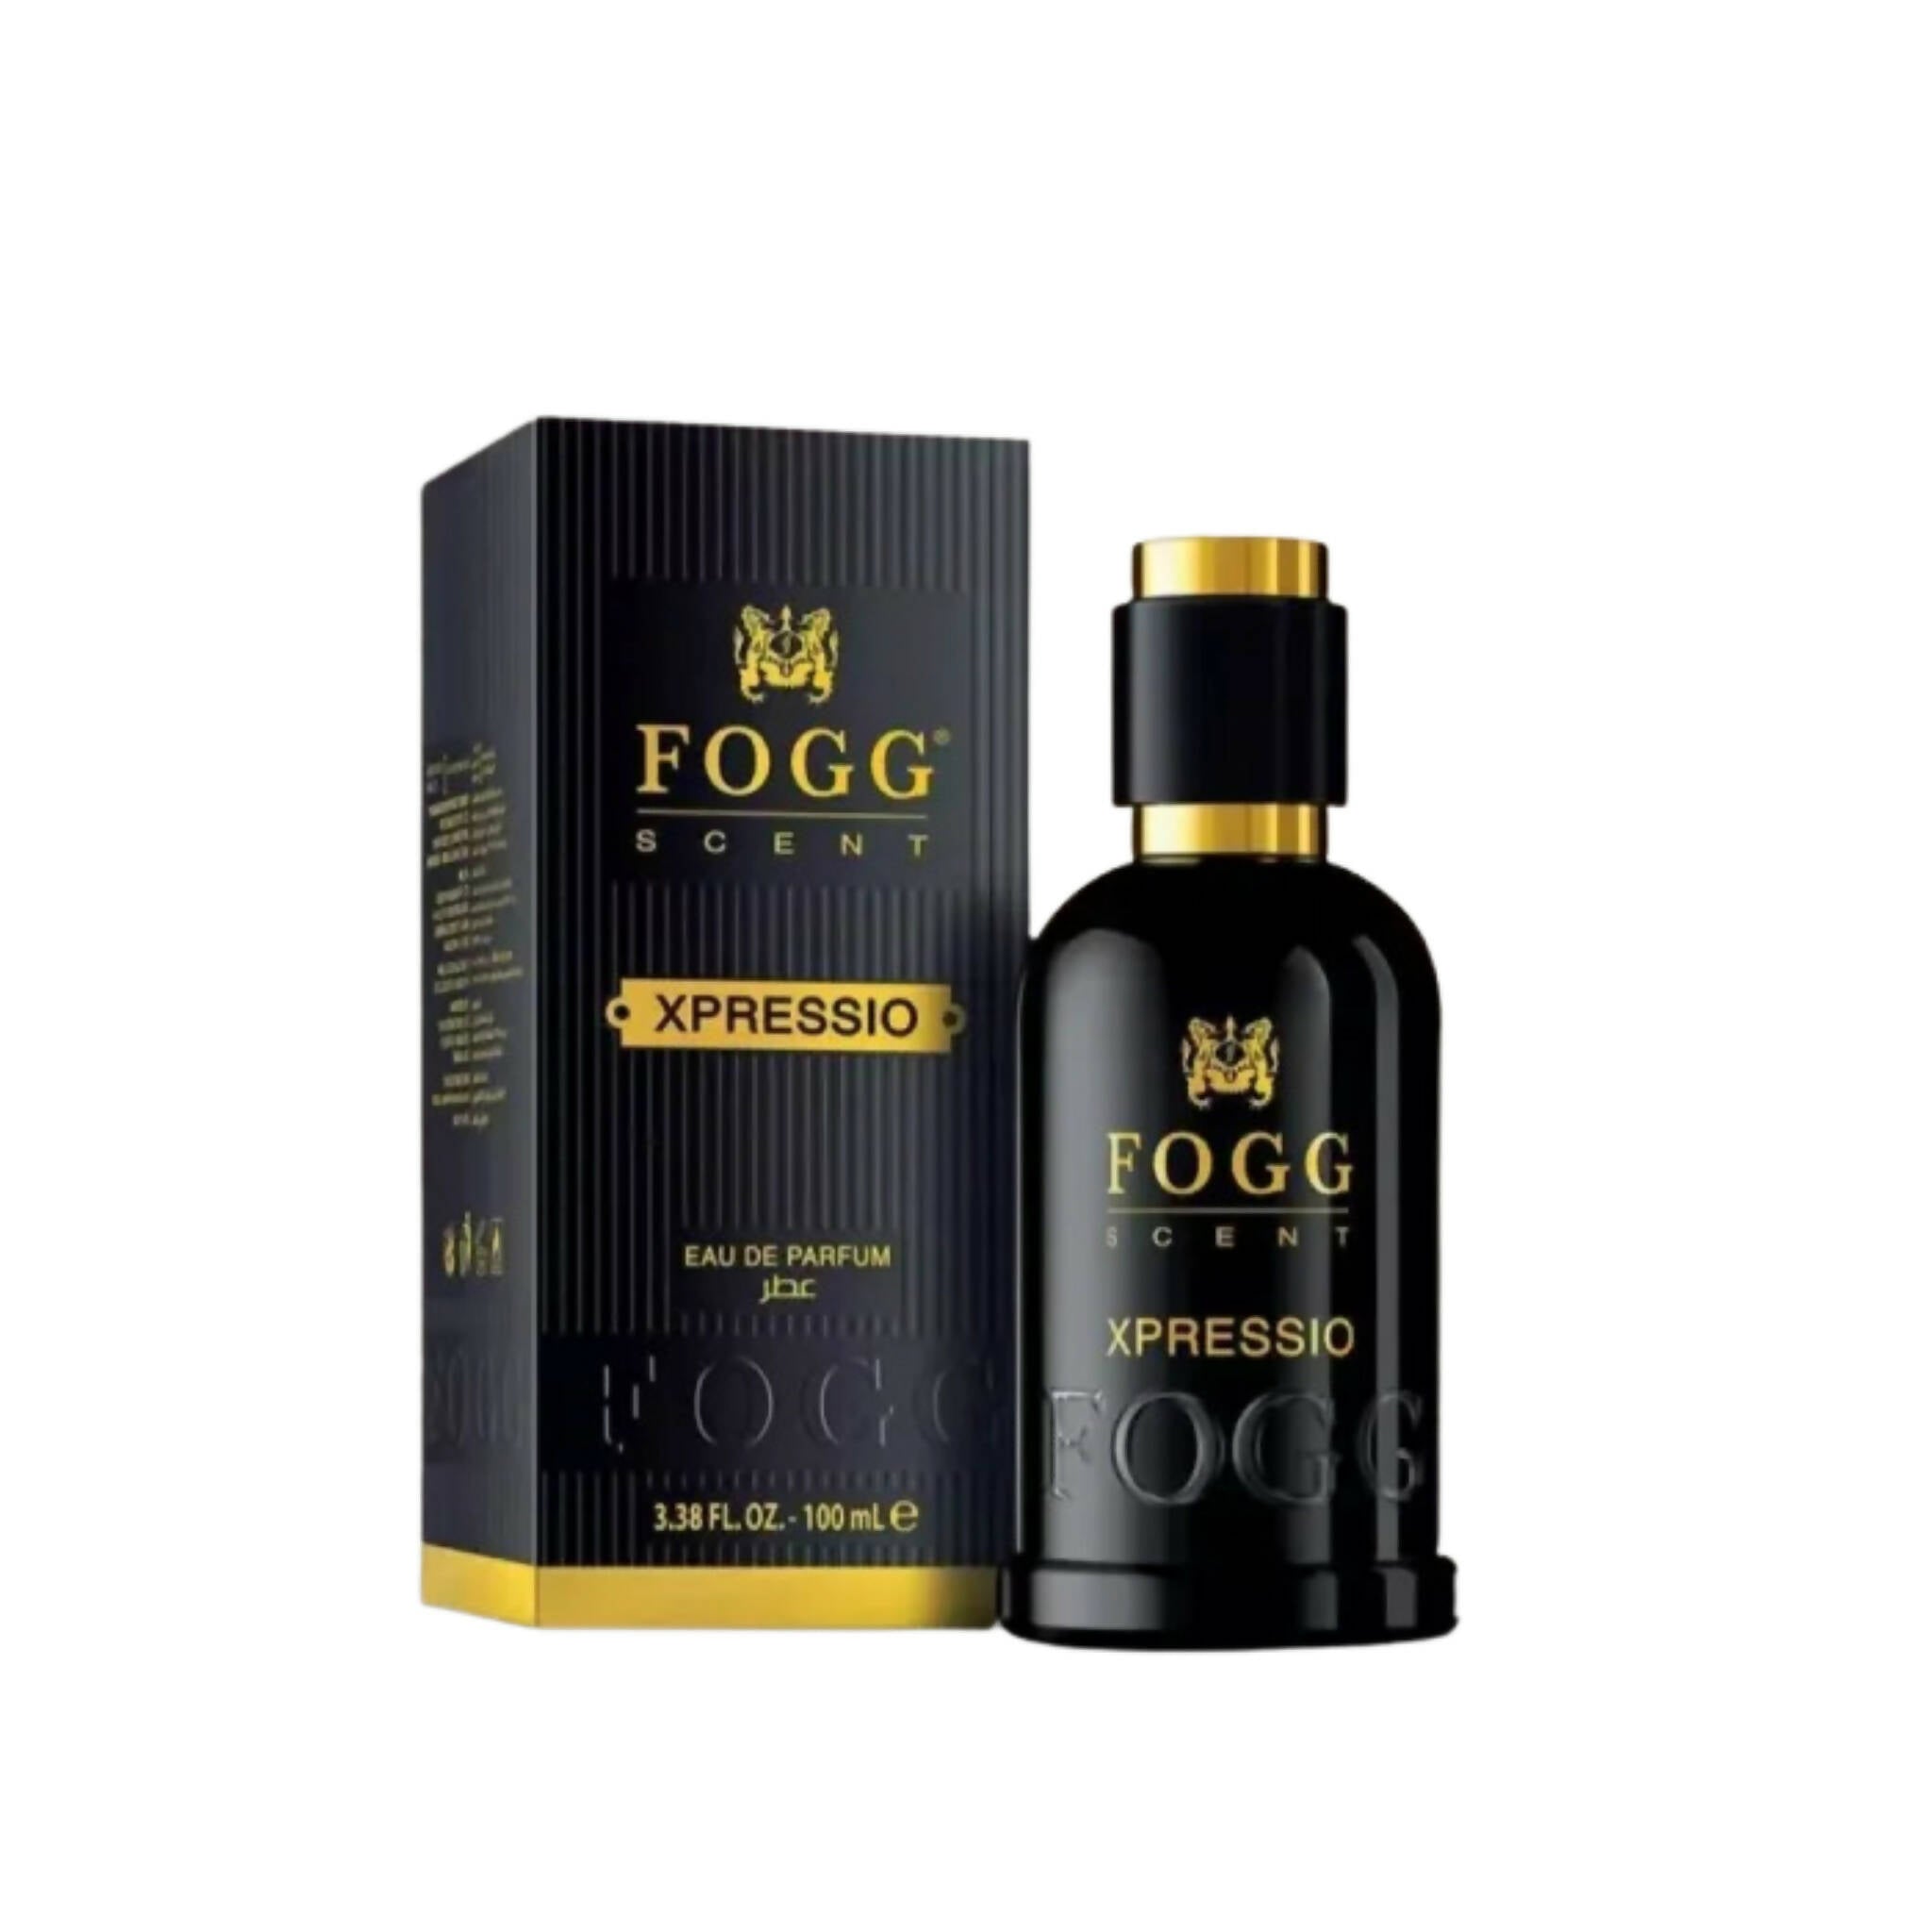 Perfume, Fog Xpressio 100ml with OUD_DIRHAM 100ml, for Unisex